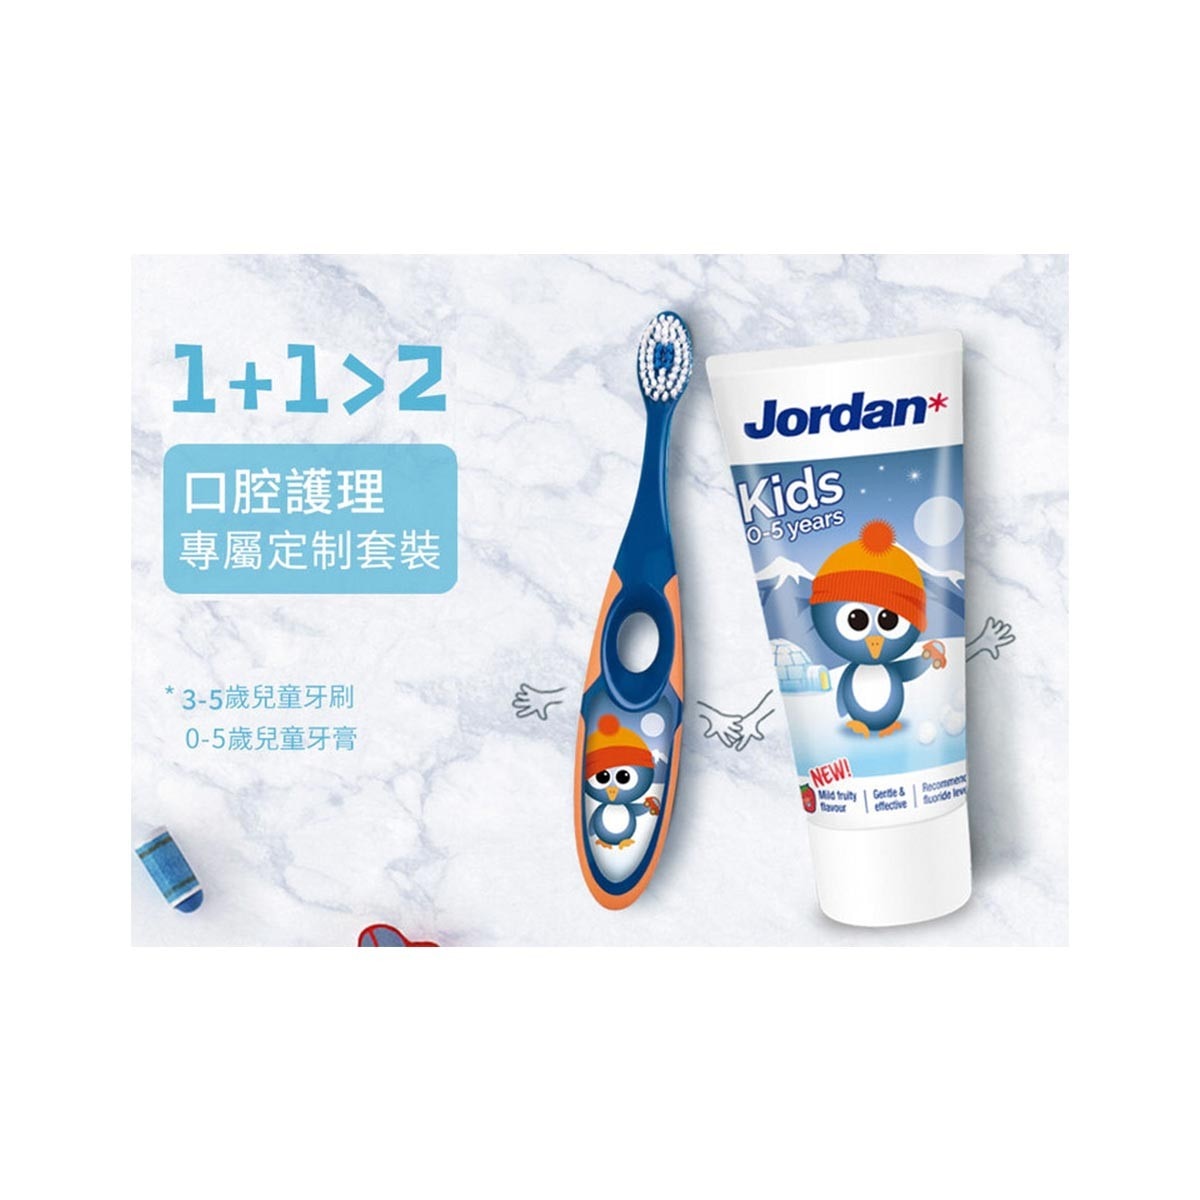 Jordan 兒童牙刷牙膏組，擁有雙密度敏感刷毛，清潔同時保護兒童幼嫩口腔，符合人體工學的握柄，幫助兒童正確學習刷牙習慣。